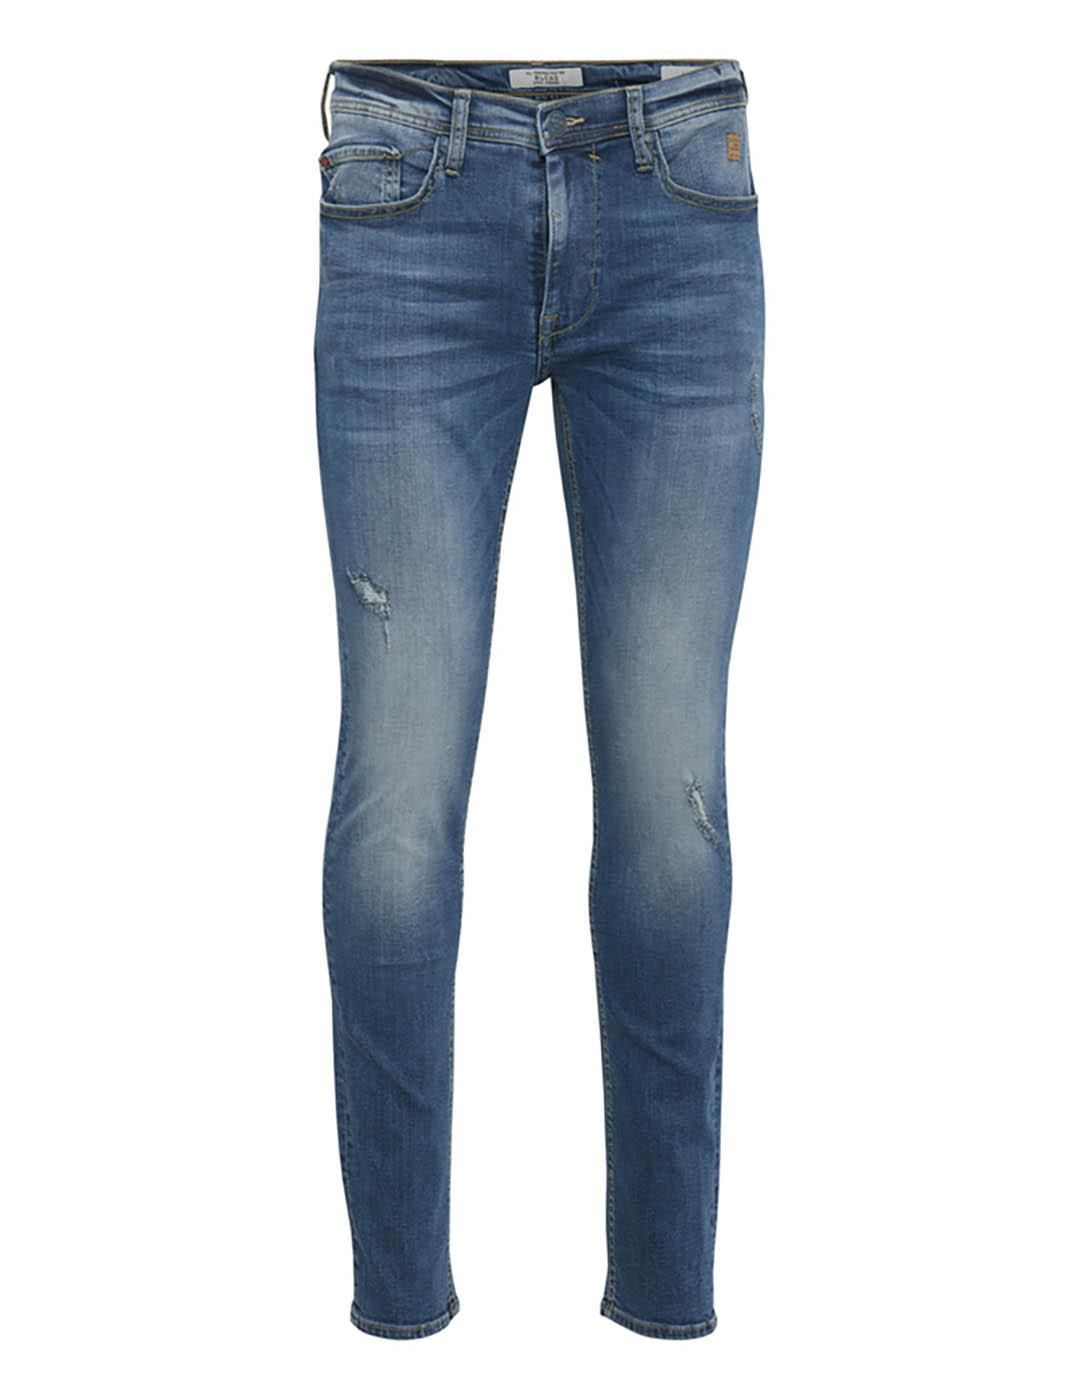 Jeans Roturas BLEND - Bicos de Fío